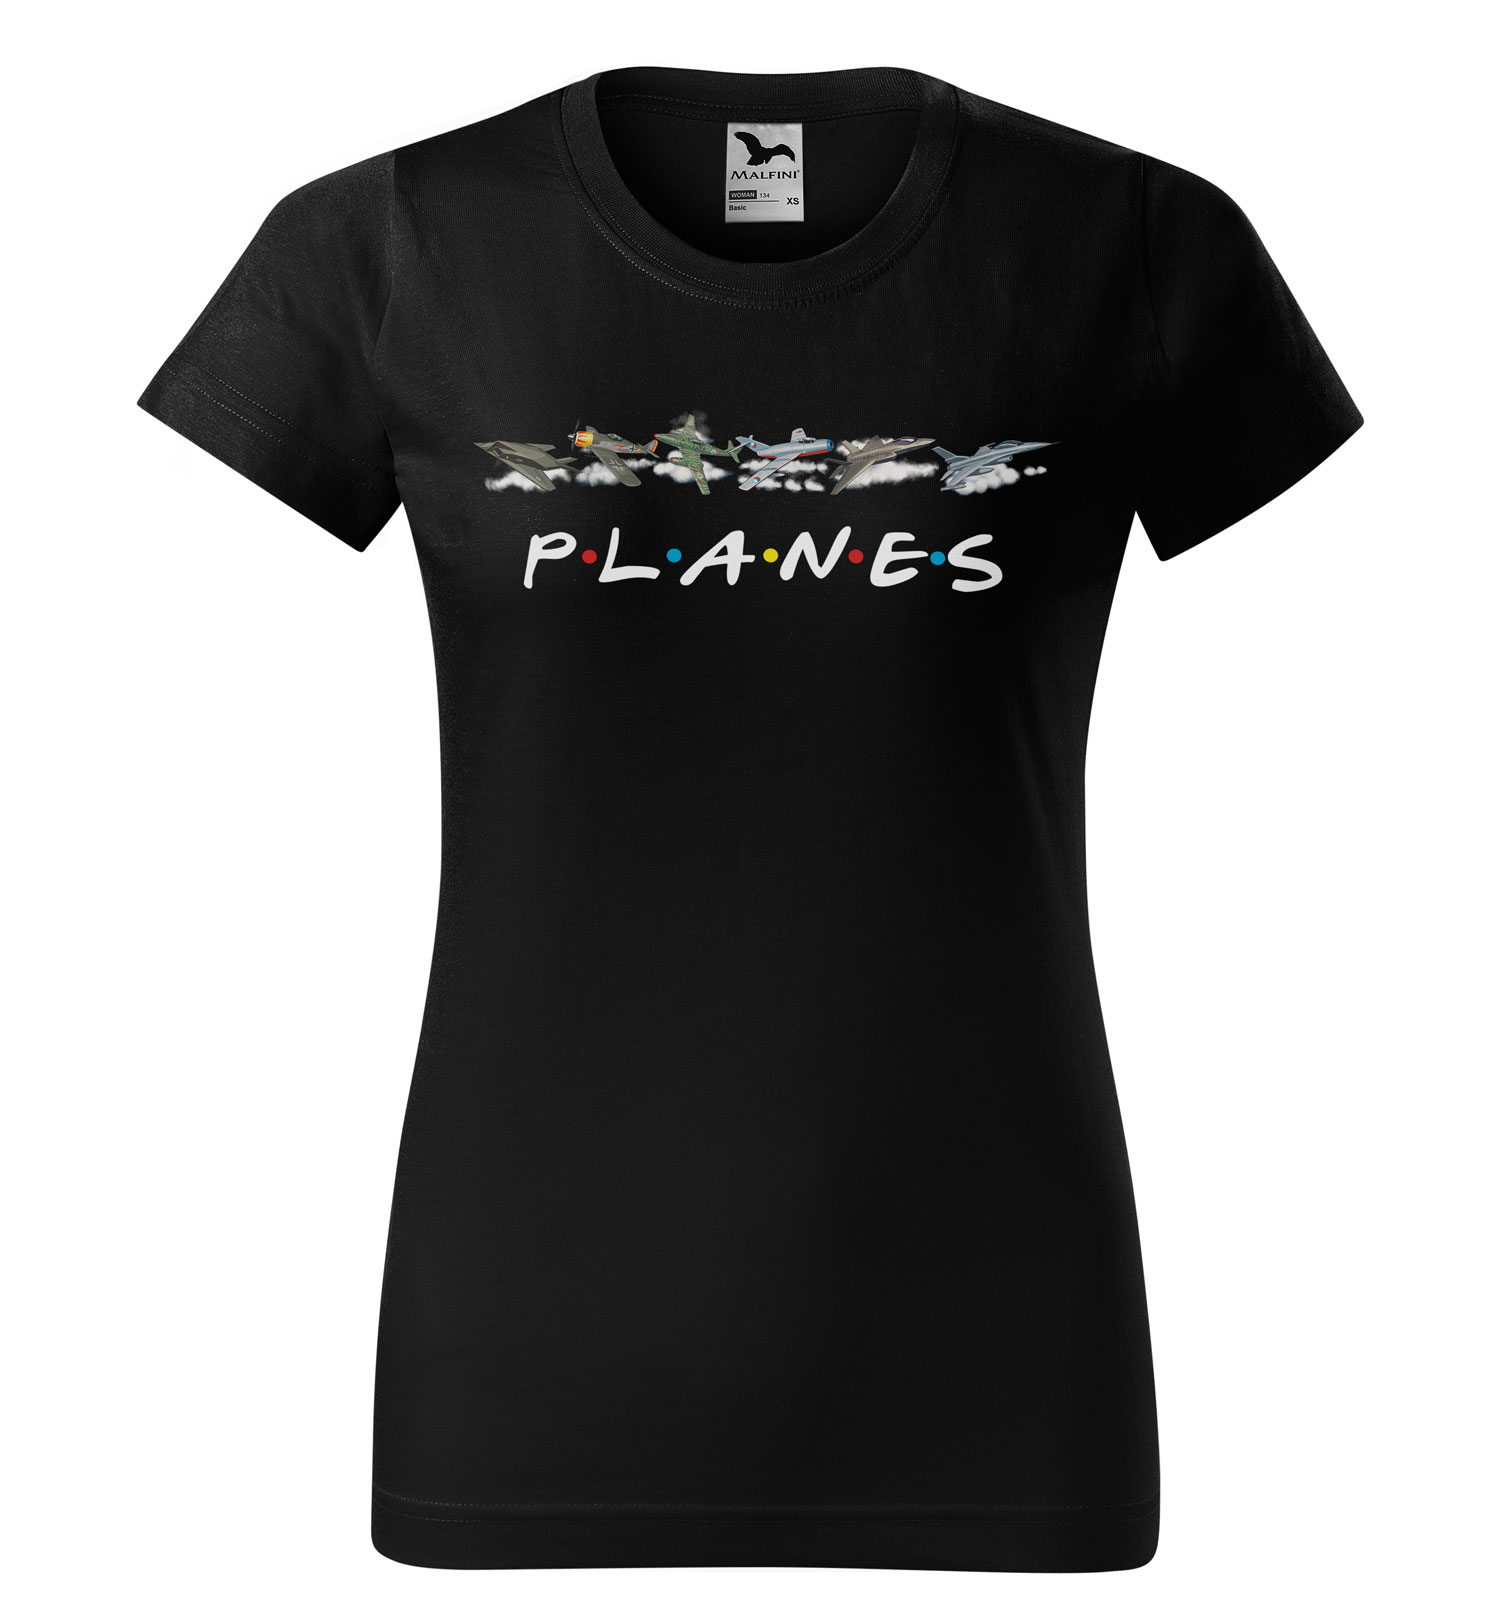 Tričko Planes (Velikost: S, Typ: pro ženy, Barva trička: Černá)